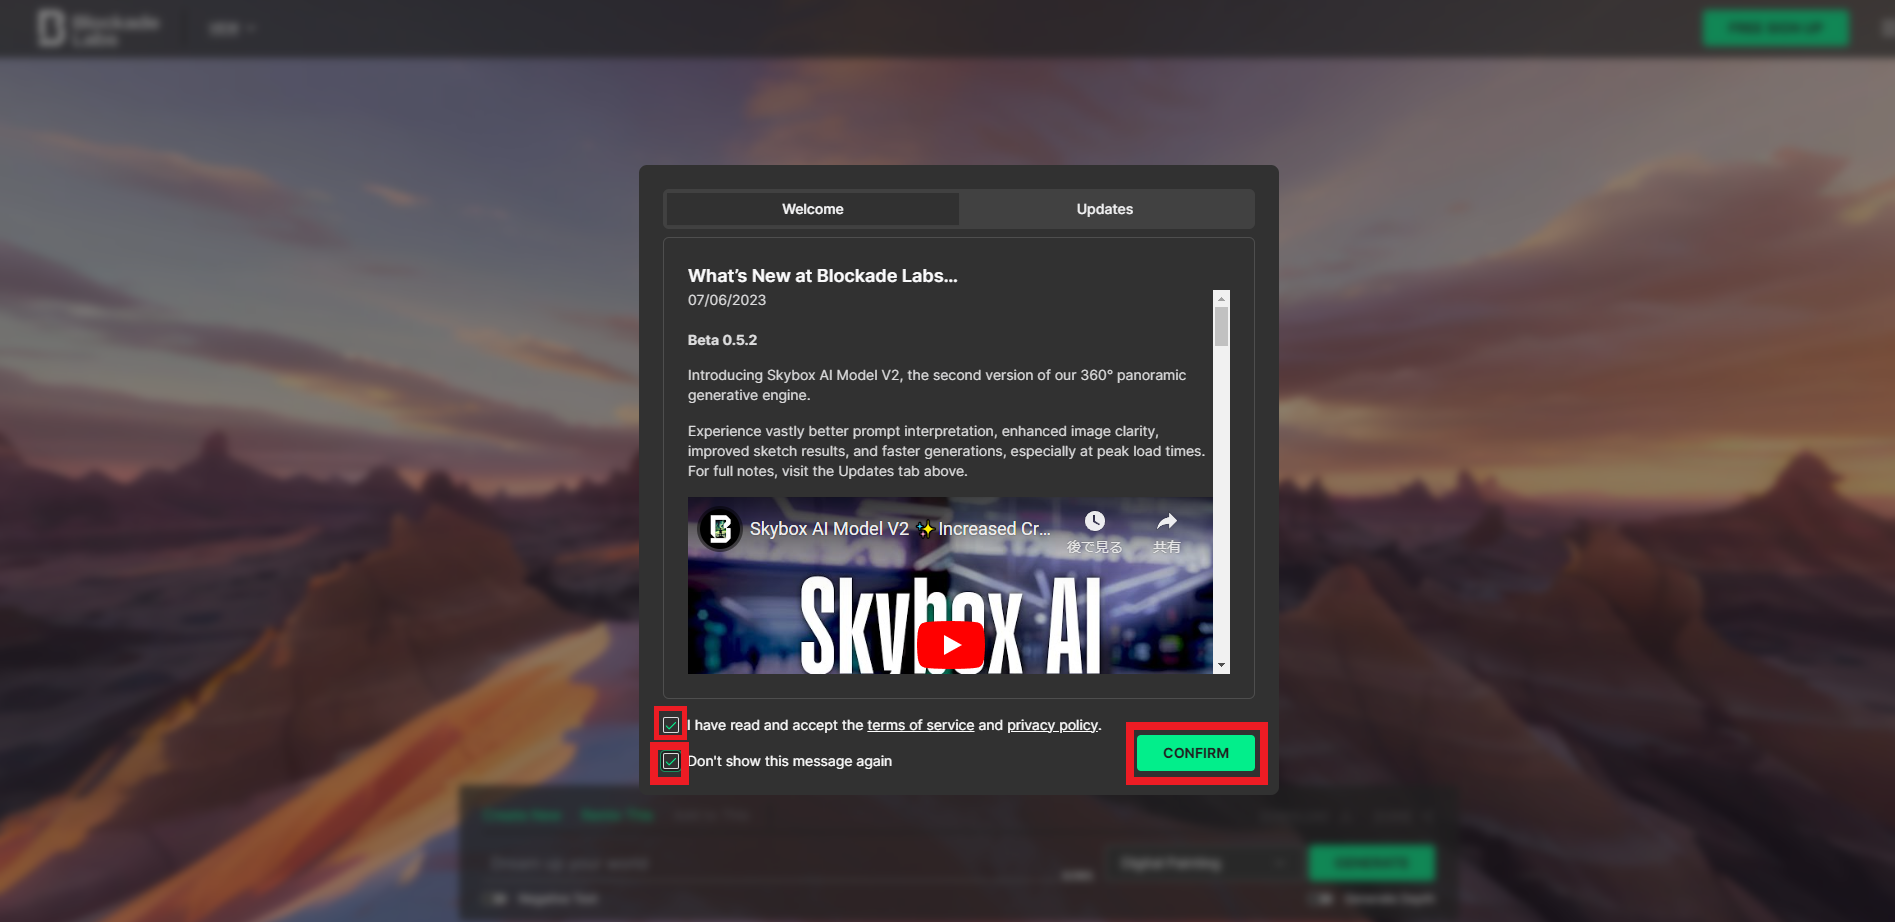 Skybox AI